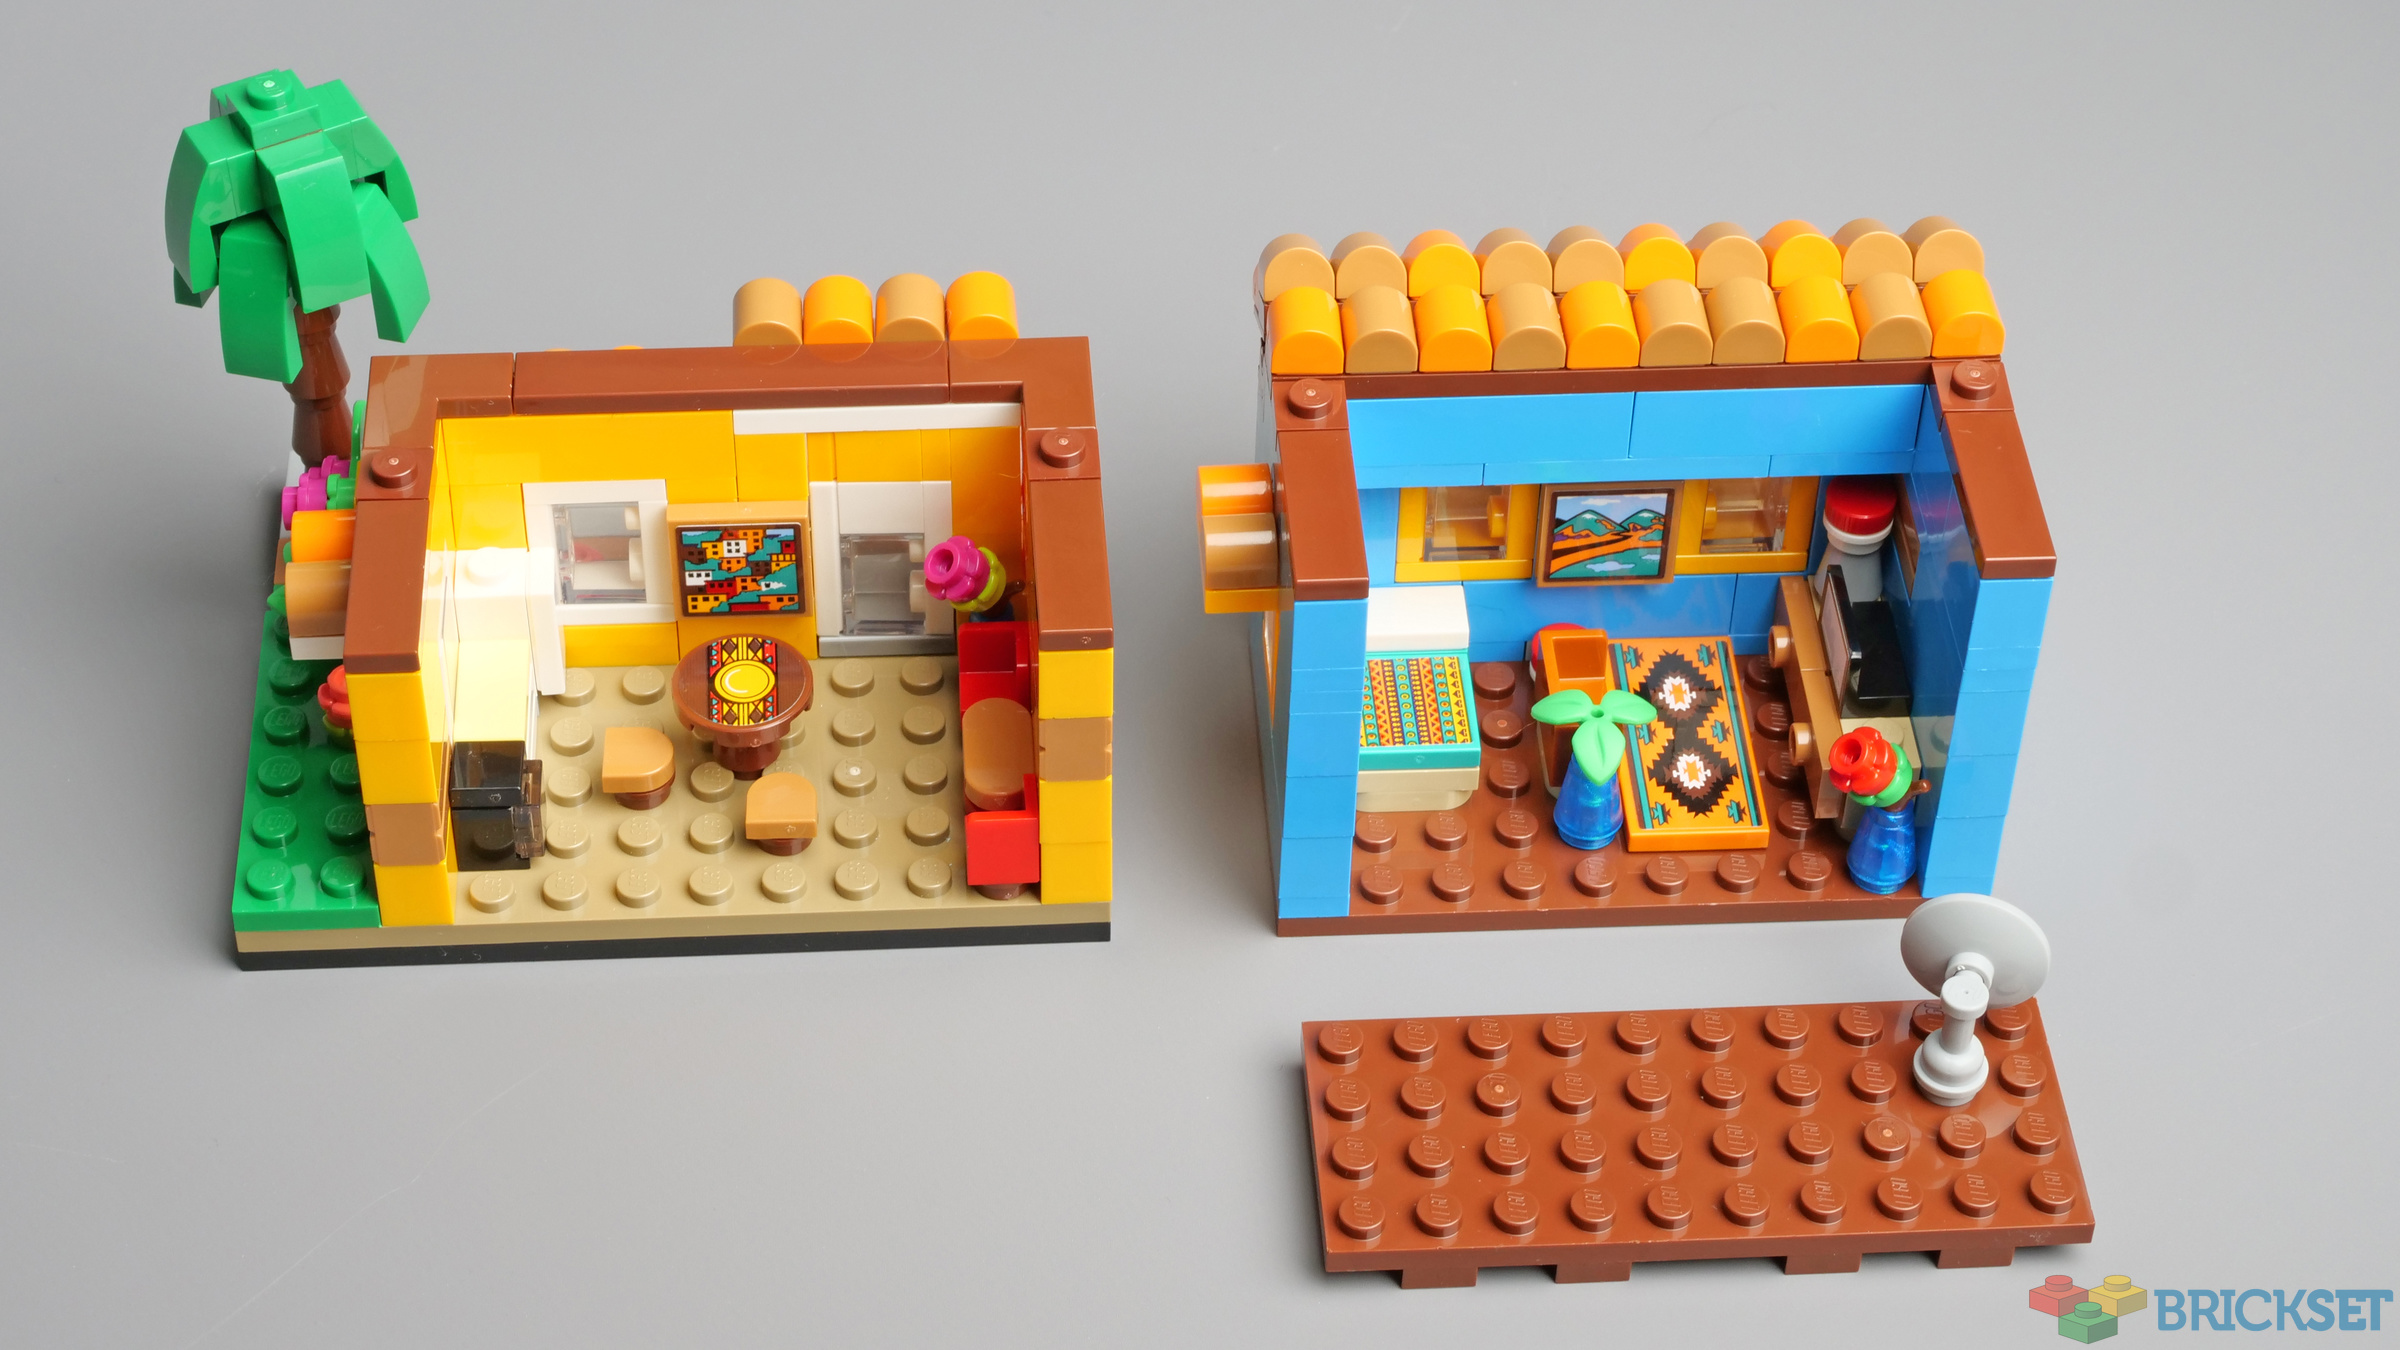 Sets - Boites LEGO® - LEGO® Set 40583 Maison du Monde 1 - La boutique  Briques Passion